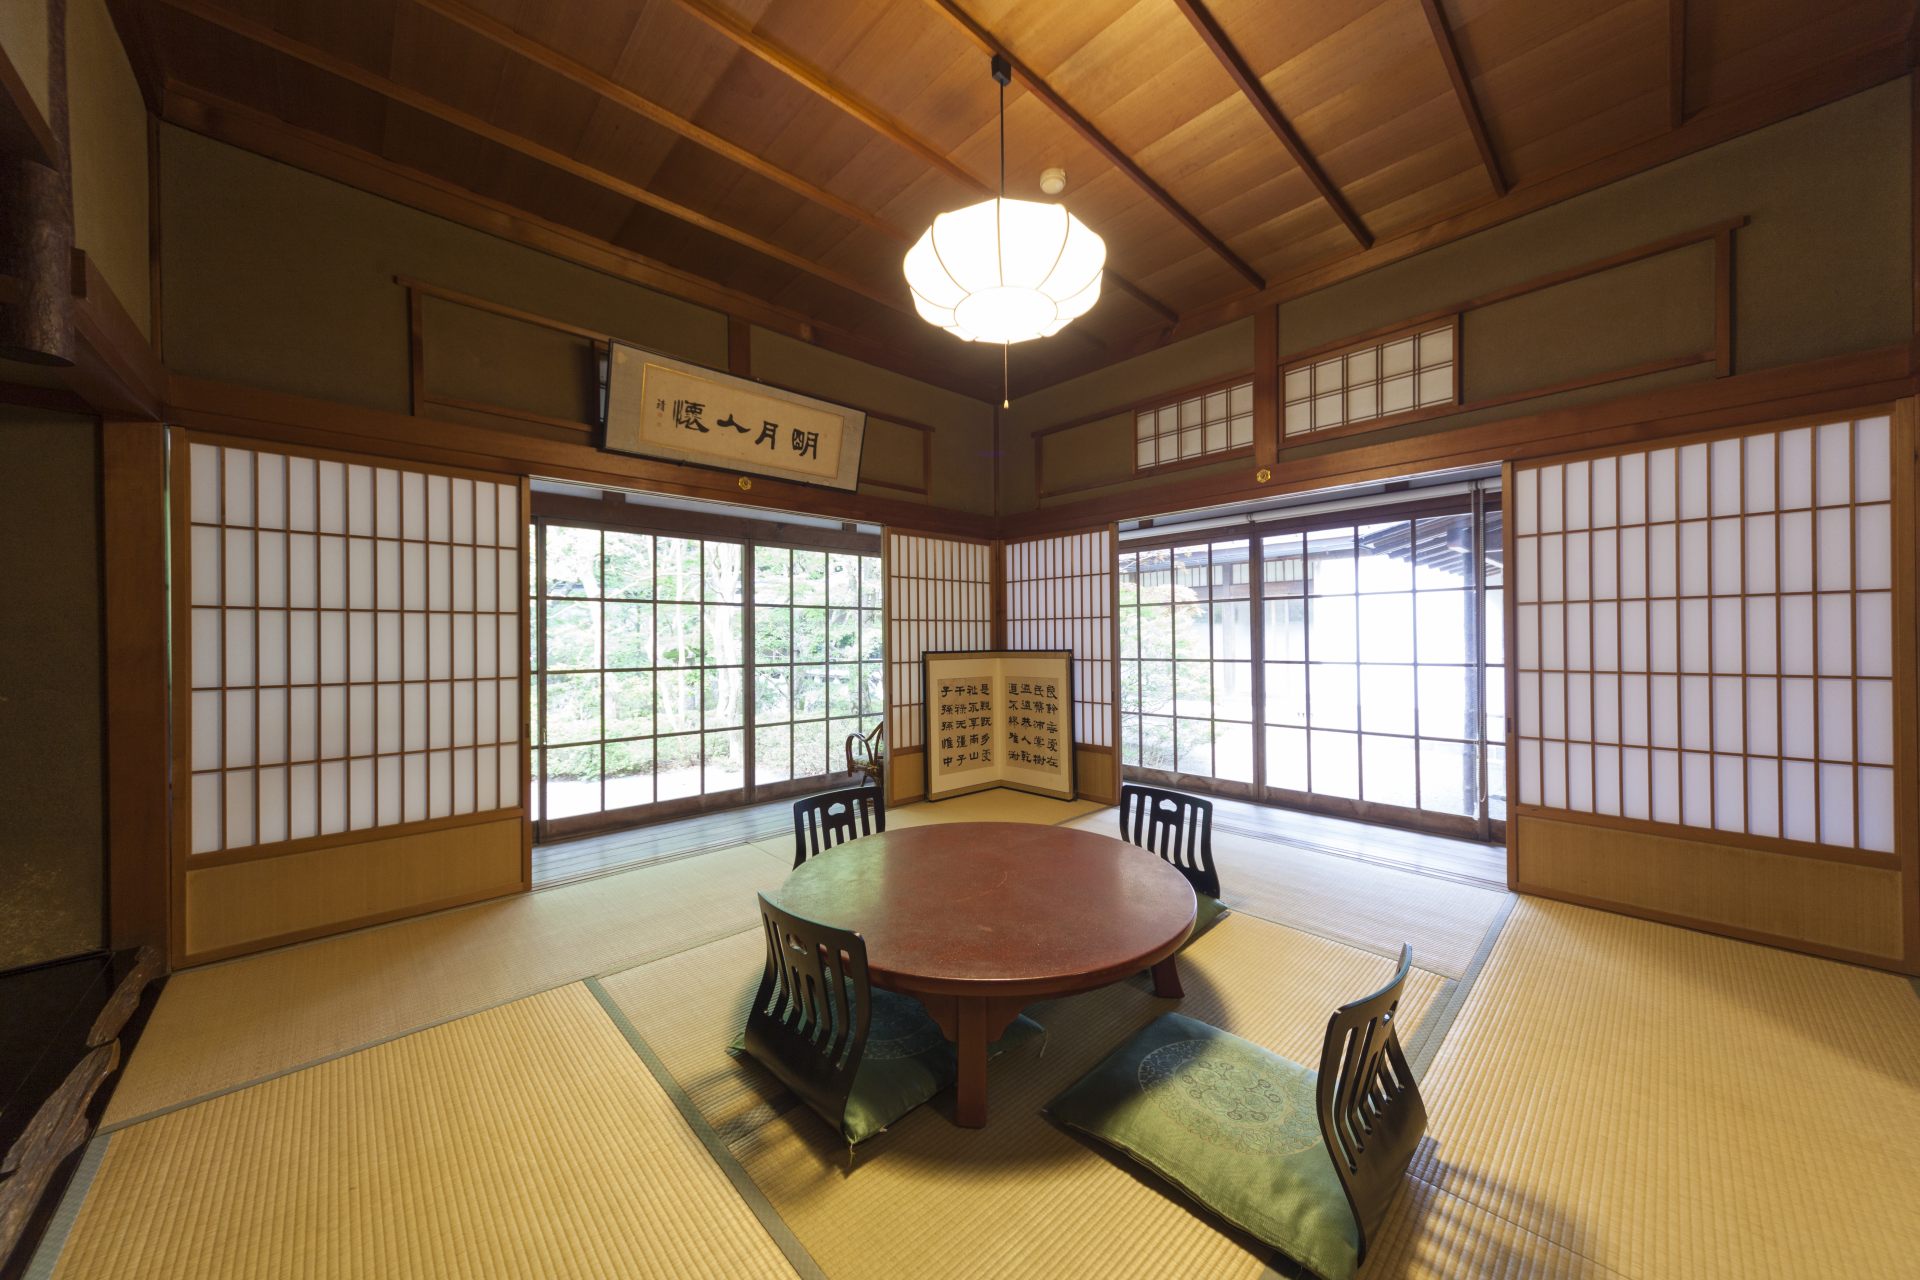 Un exemple des chambres d'hôtes. Retrouvez-vous enveloppé dans le charme japonais traditionnel.